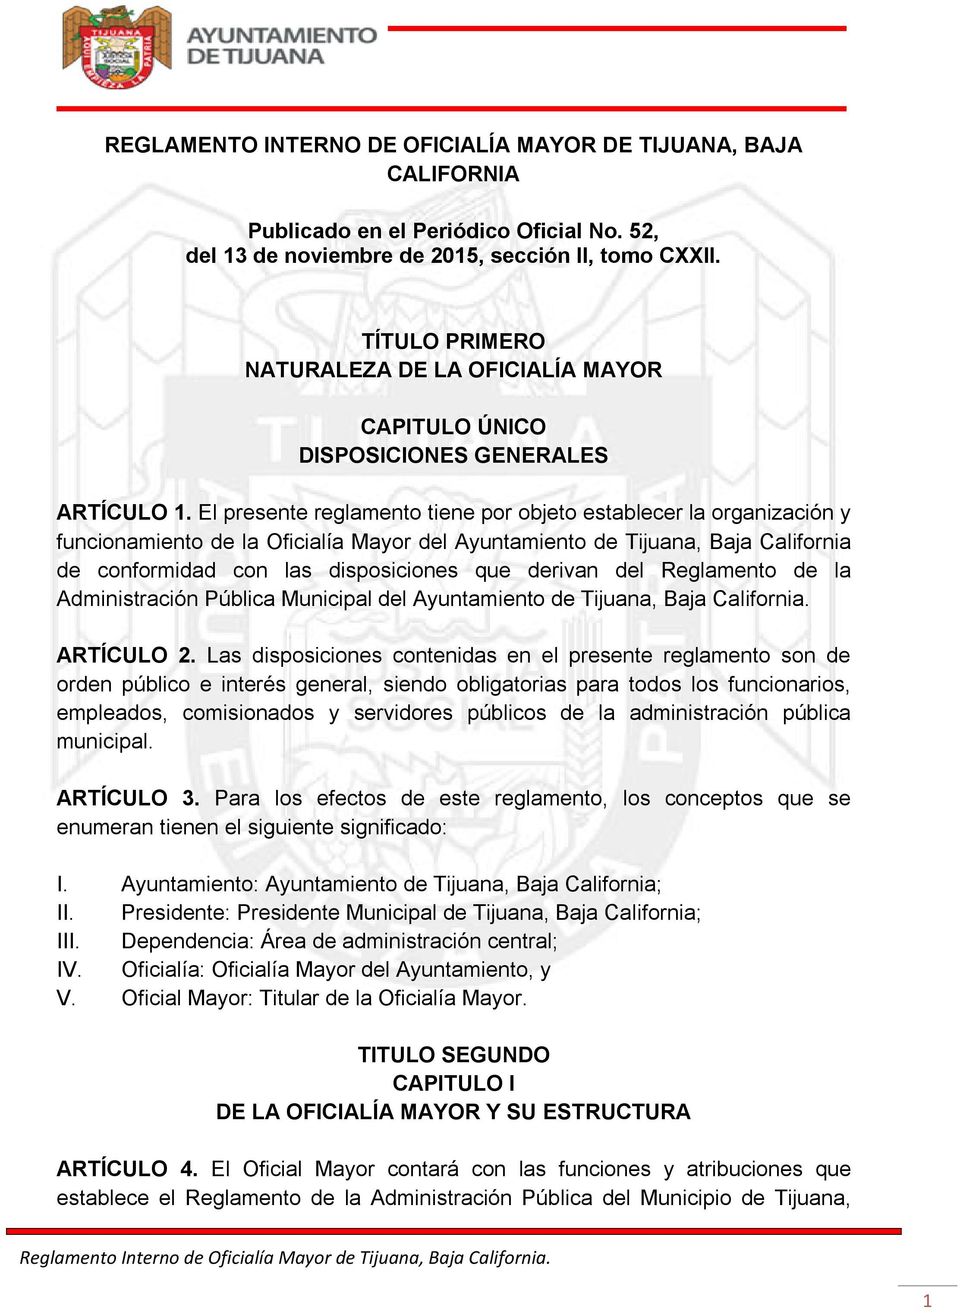 El presente reglamento tiene por objeto establecer la organización y funcionamiento de la Oficialía Mayor del Ayuntamiento de Tijuana, Baja California de conformidad con las disposiciones que derivan